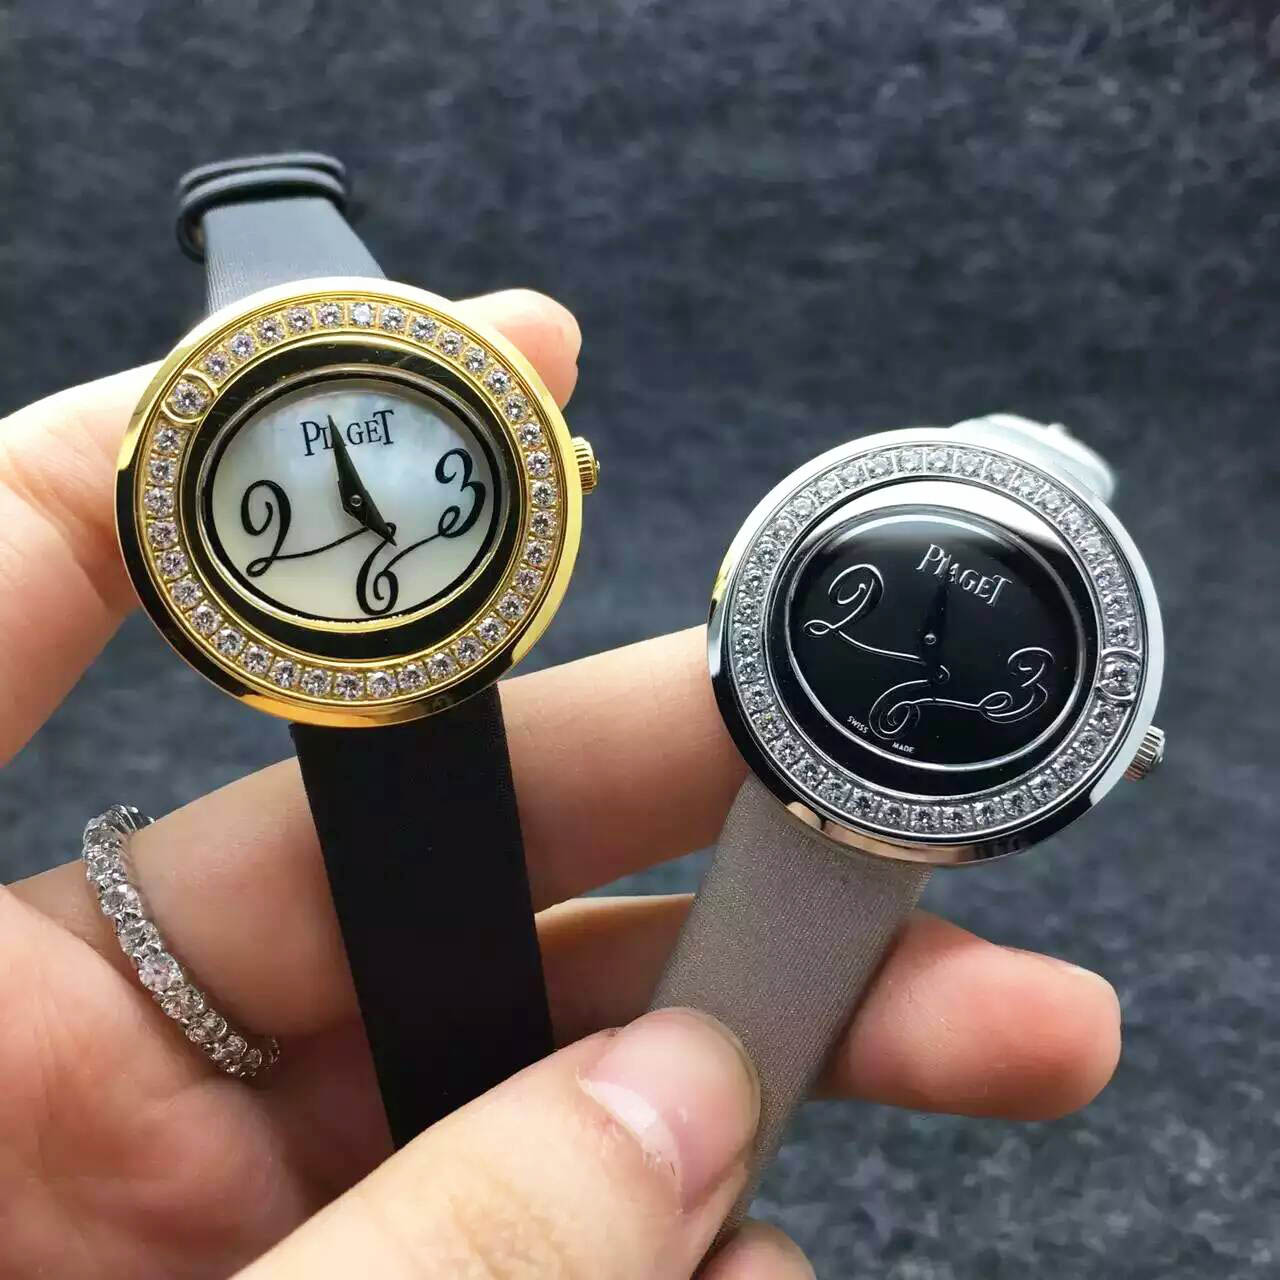 3A伯爵 - PIAGET 女士腕錶 錶帶采用針扣設計